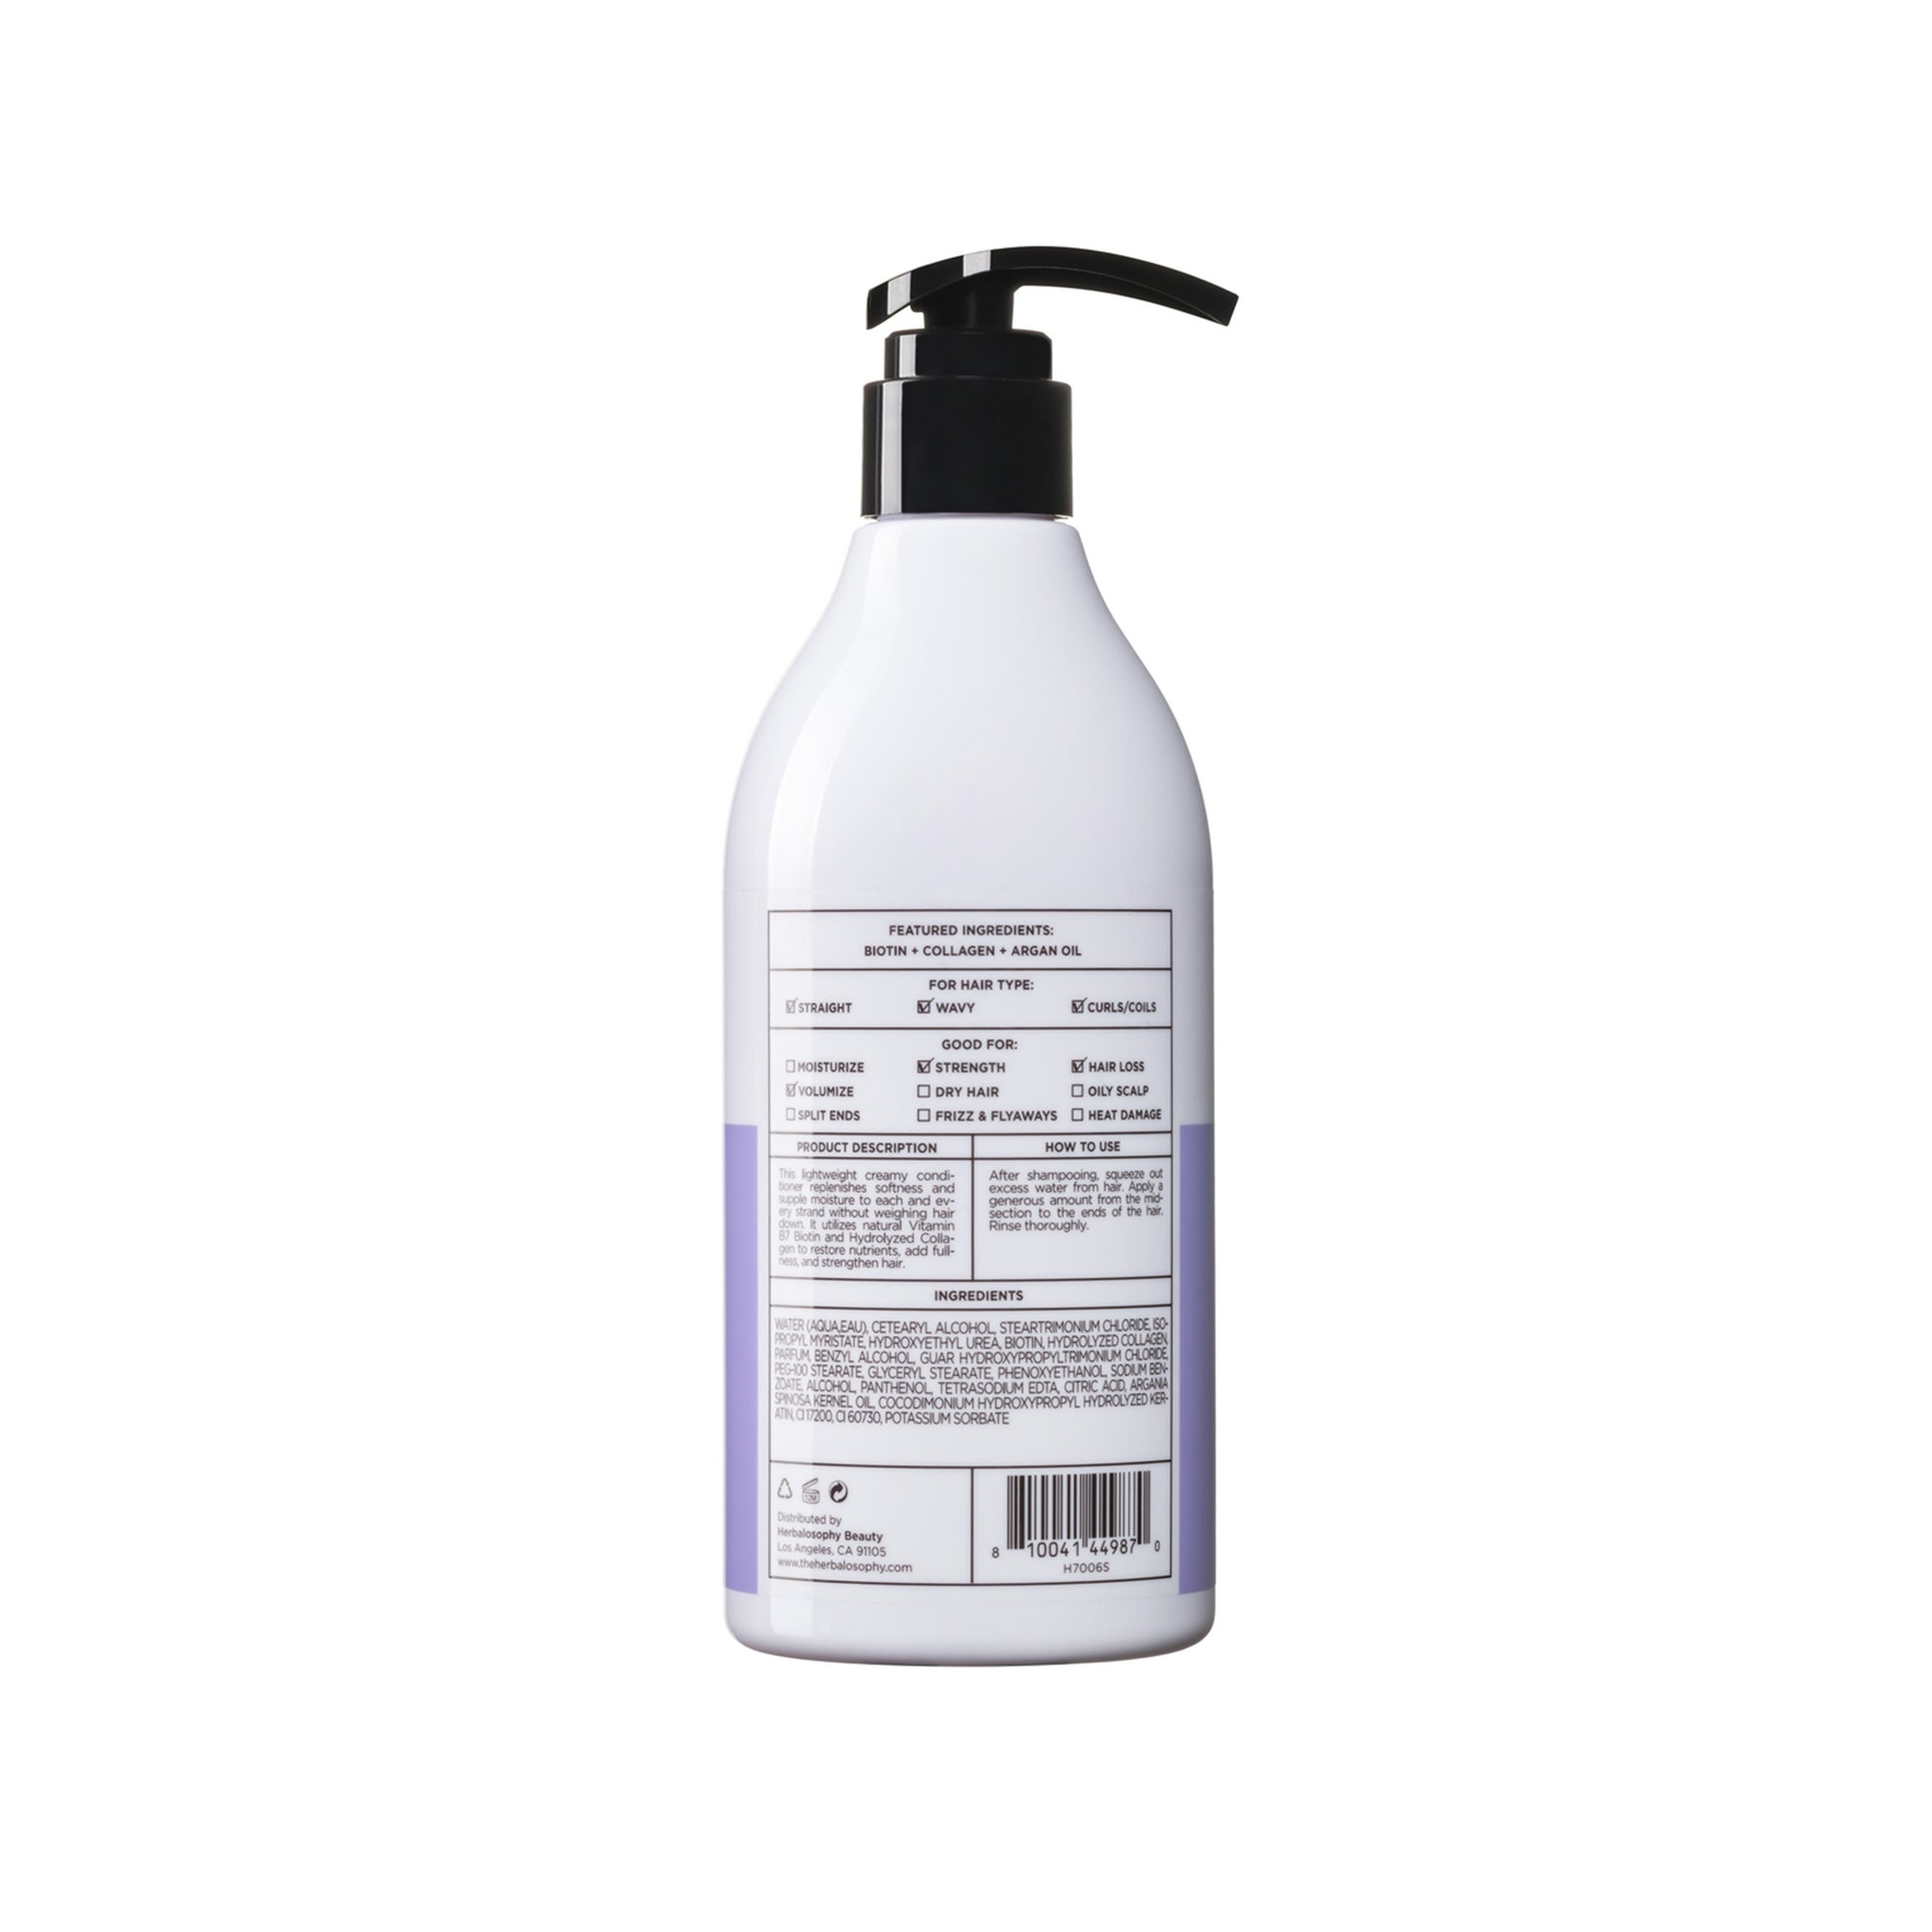 Biotin + Collagen Conditioner 16.9oz bottle back